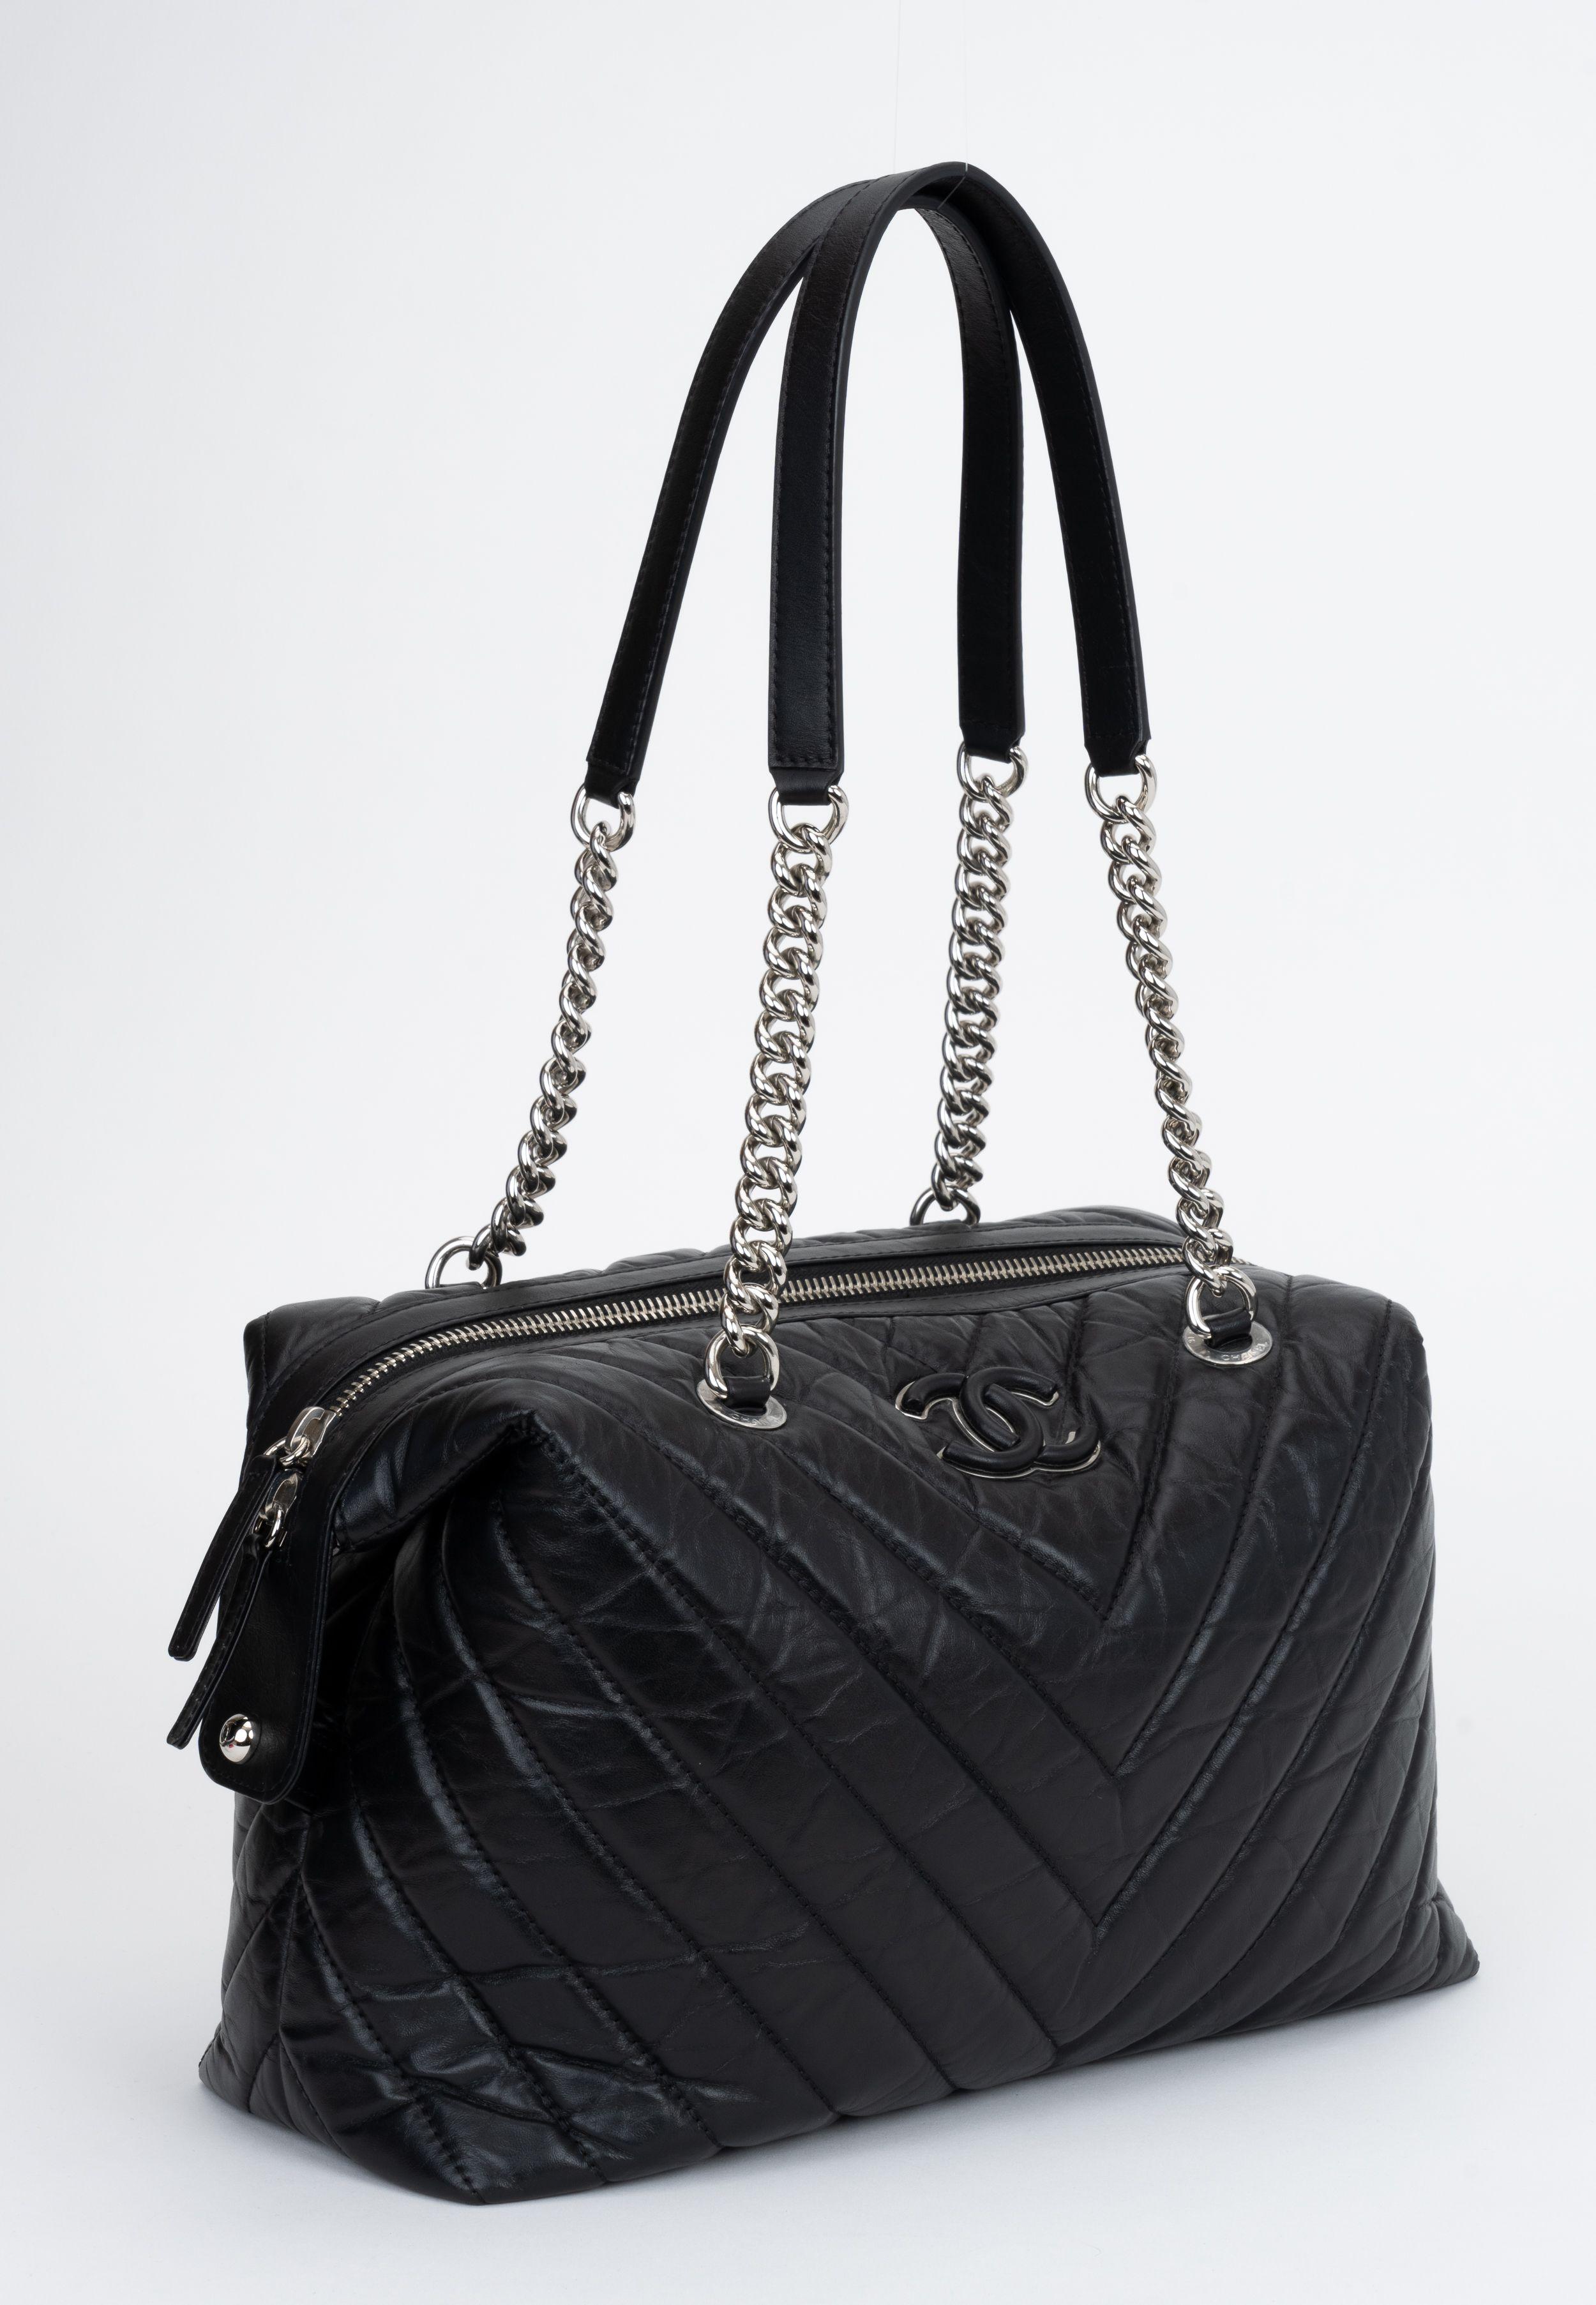 Chanel schwarze Chevron-Leder-Umhängetasche mit doppeltem Riemen. Vorderseite mit verdecktem Logo. Collection'S 26. Schulterhöhe 13